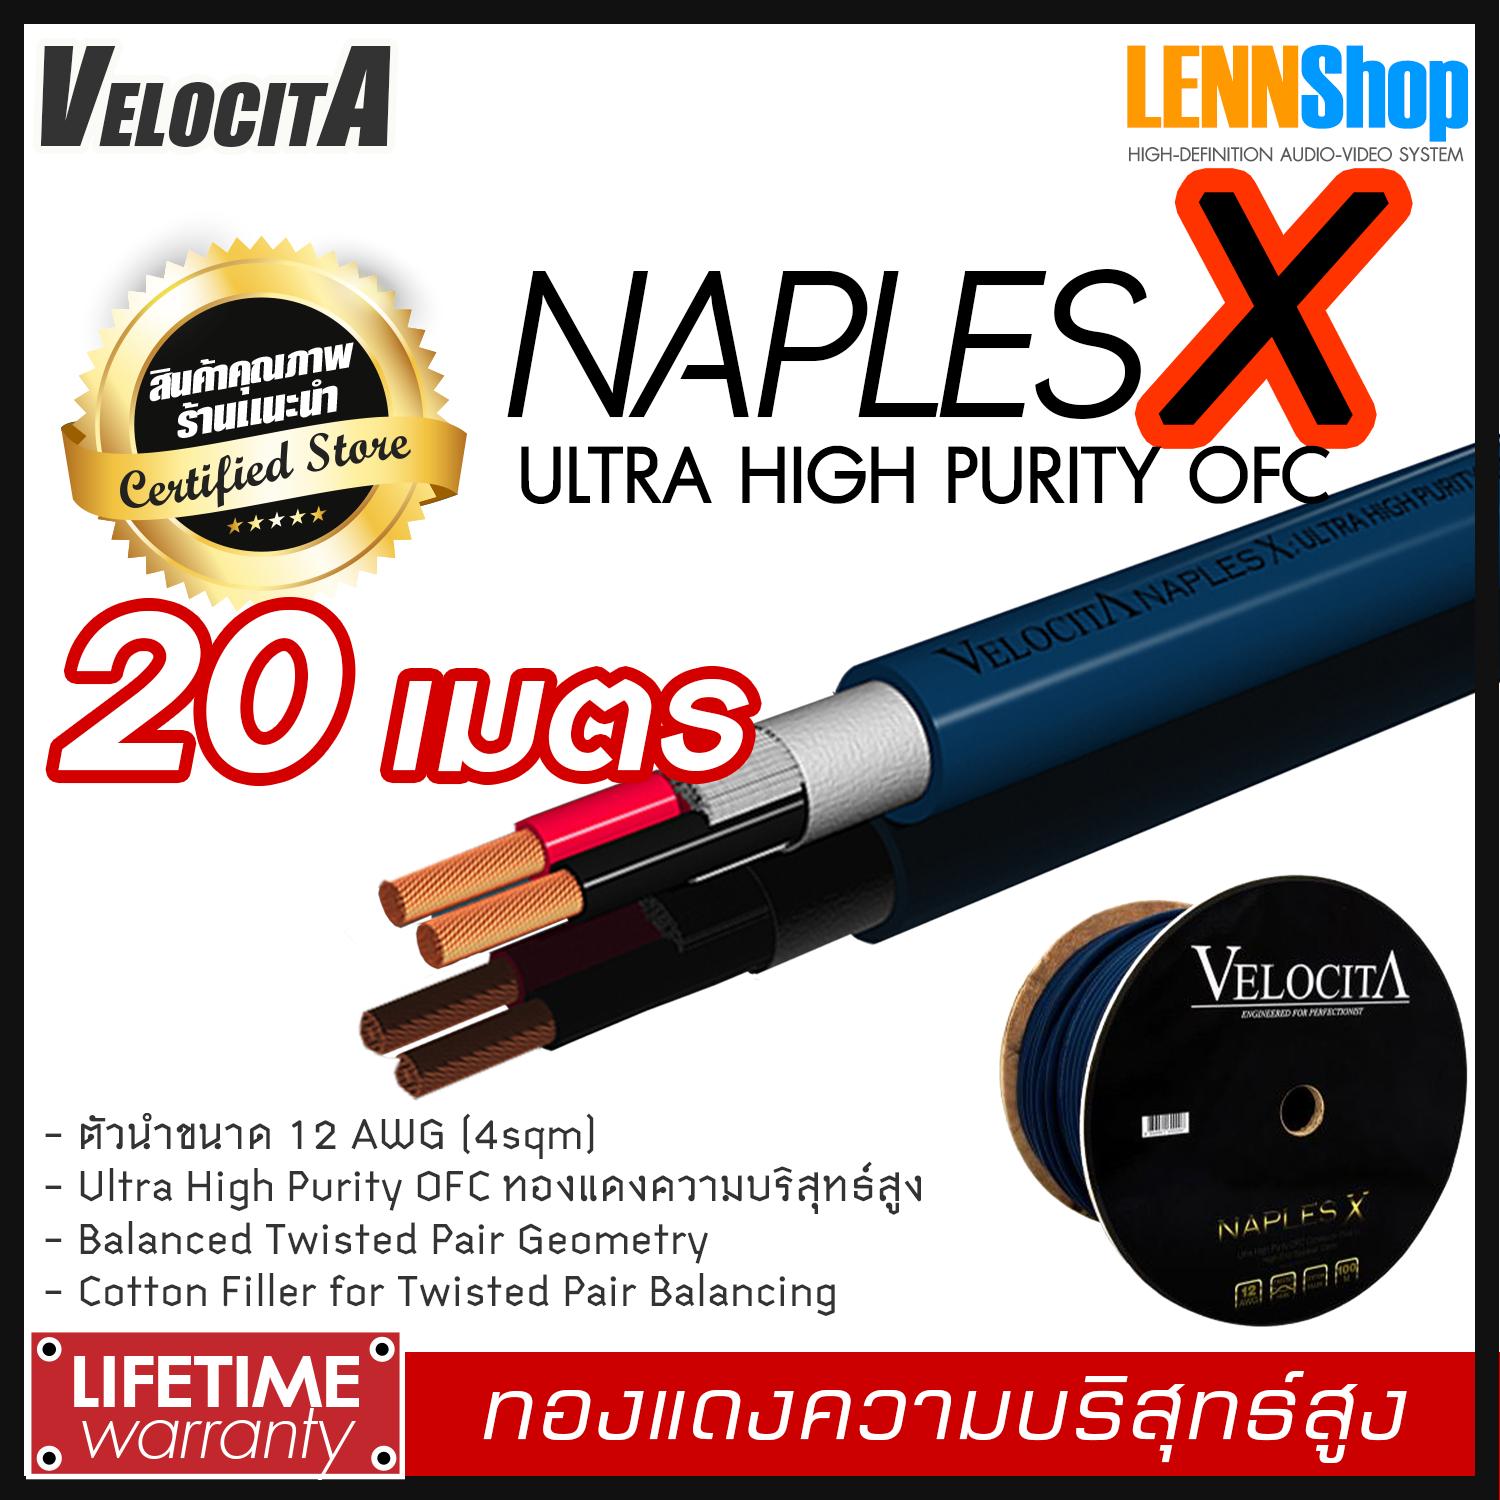 VELOCITA : NAPLES X สายลำโพง  Ultra High Purity OFC ความบริสุทธ์สูง ความยาว ตั้งแต่ 1 - 100 เมตร เลือกได้หลายขนาด สินค้าของแท้ 100% จากตัวแทนจำหน่ายอย่างเป็นทางการ จำหน่ายโดย LENNSHOP / Velocita Naple X / naple X